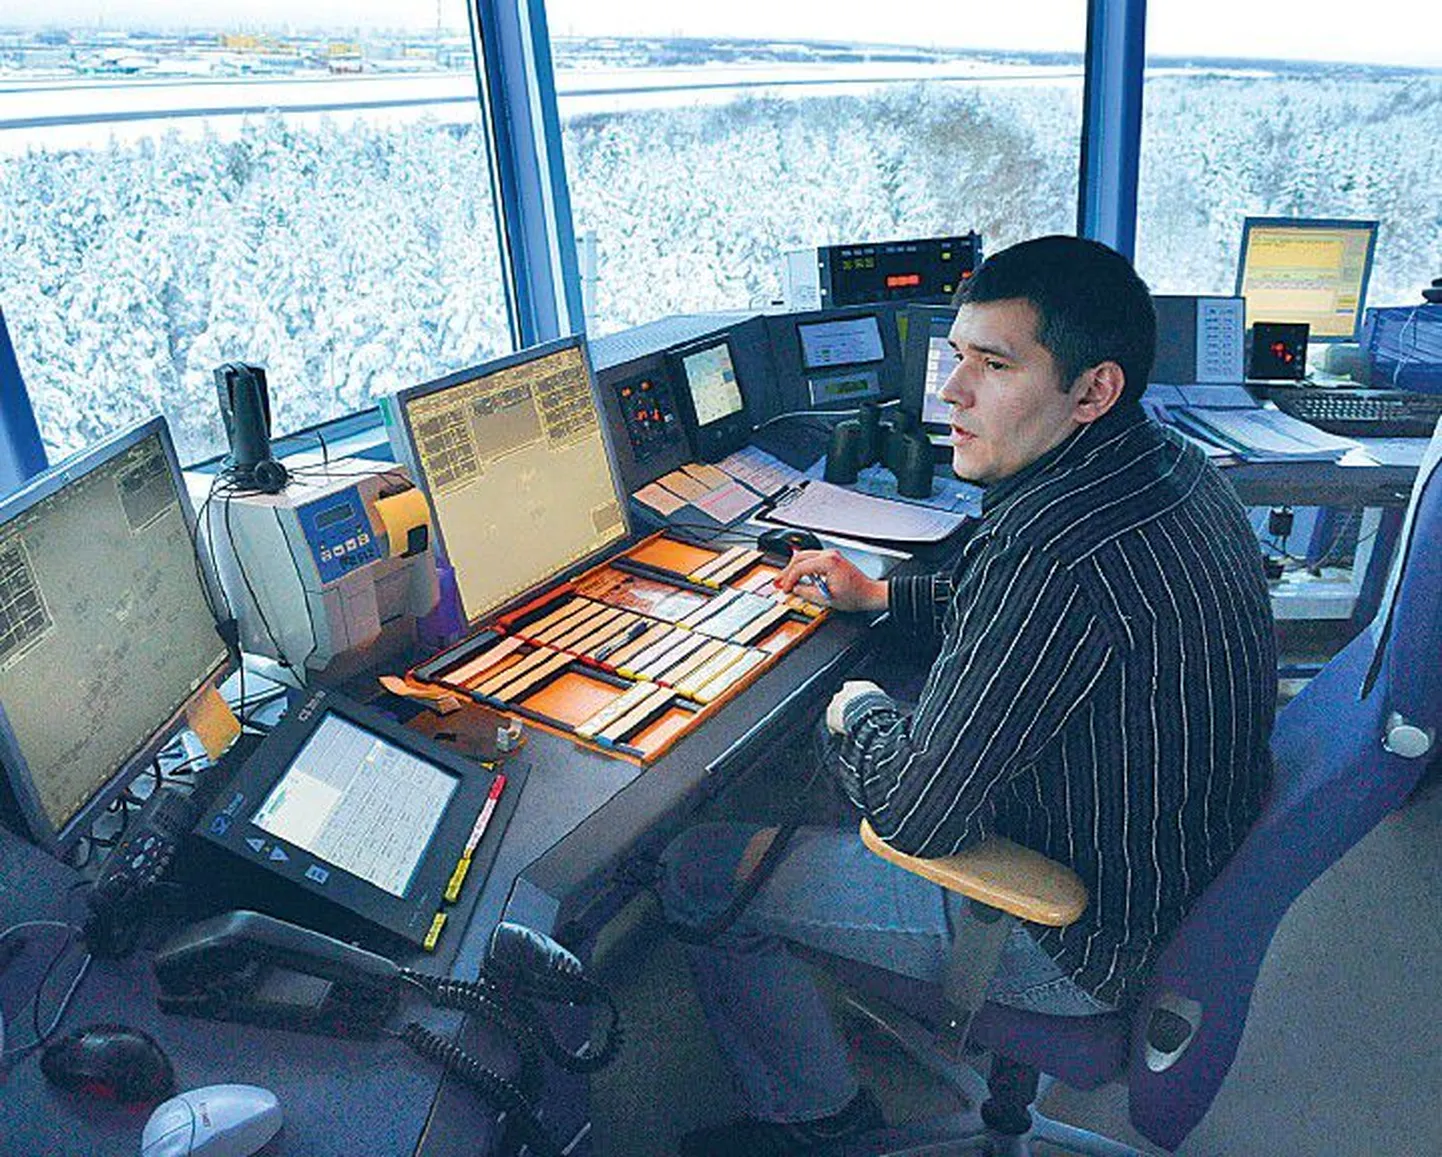 Марек Юрна руководит движением самолетов из башни и дает разрешение на использование взлетно-посадочной полосы.